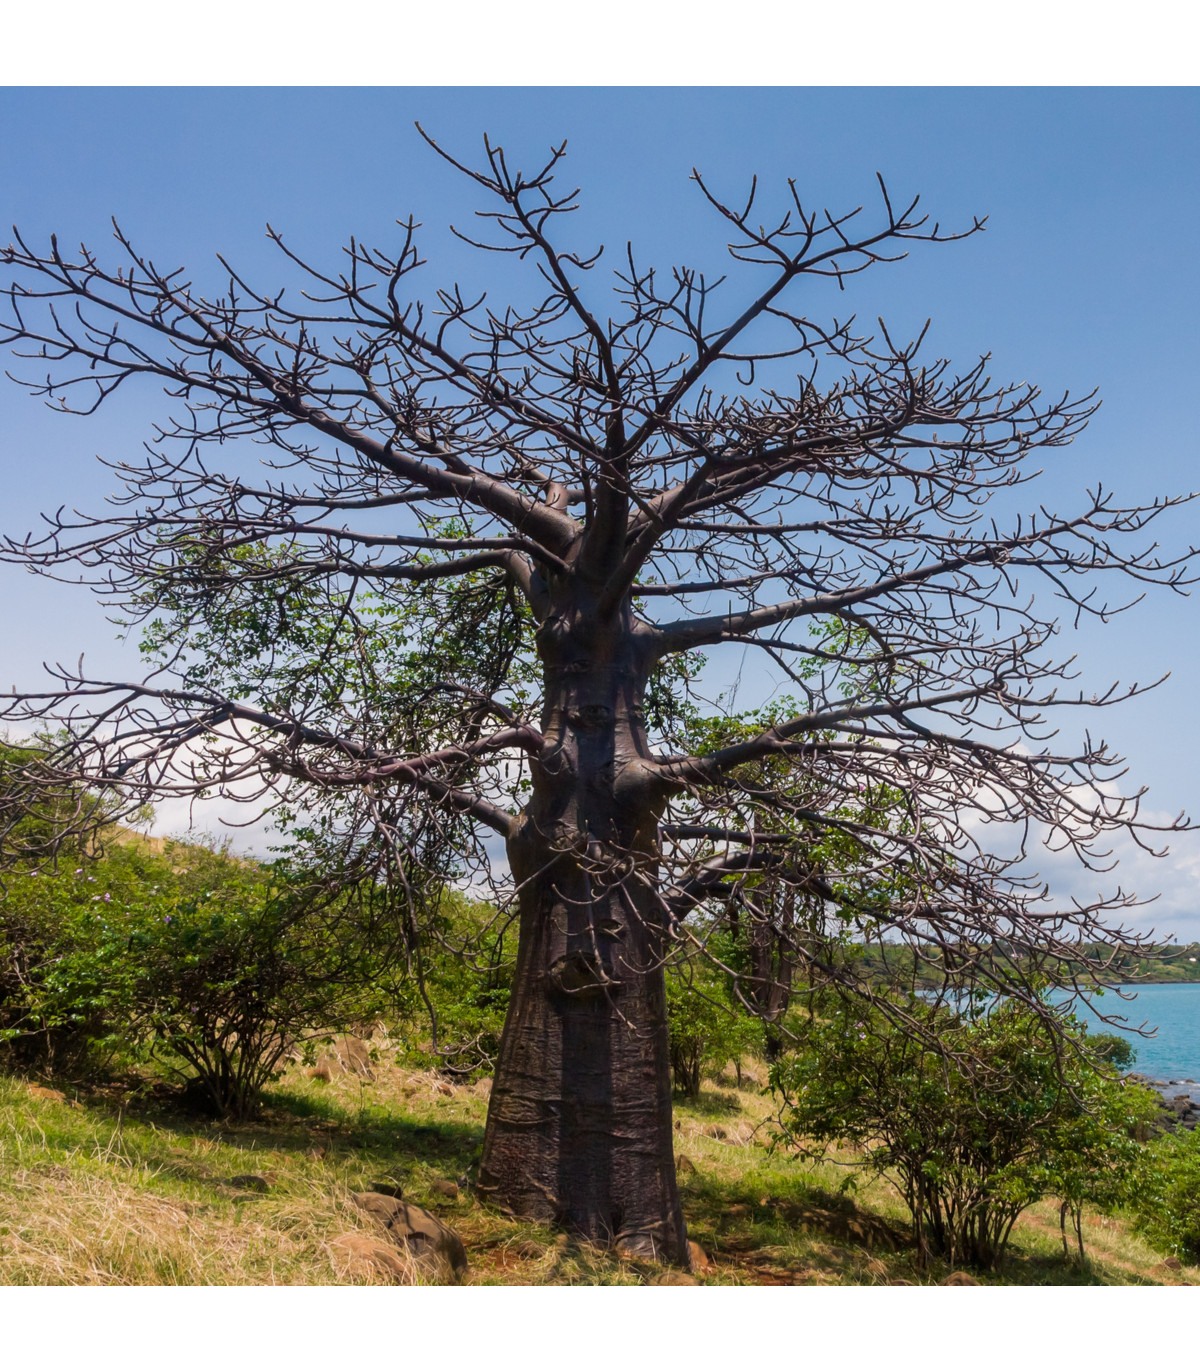 Baobab suarézský - Adansonia suarezensis - prodej semen baobabu - 2 ks